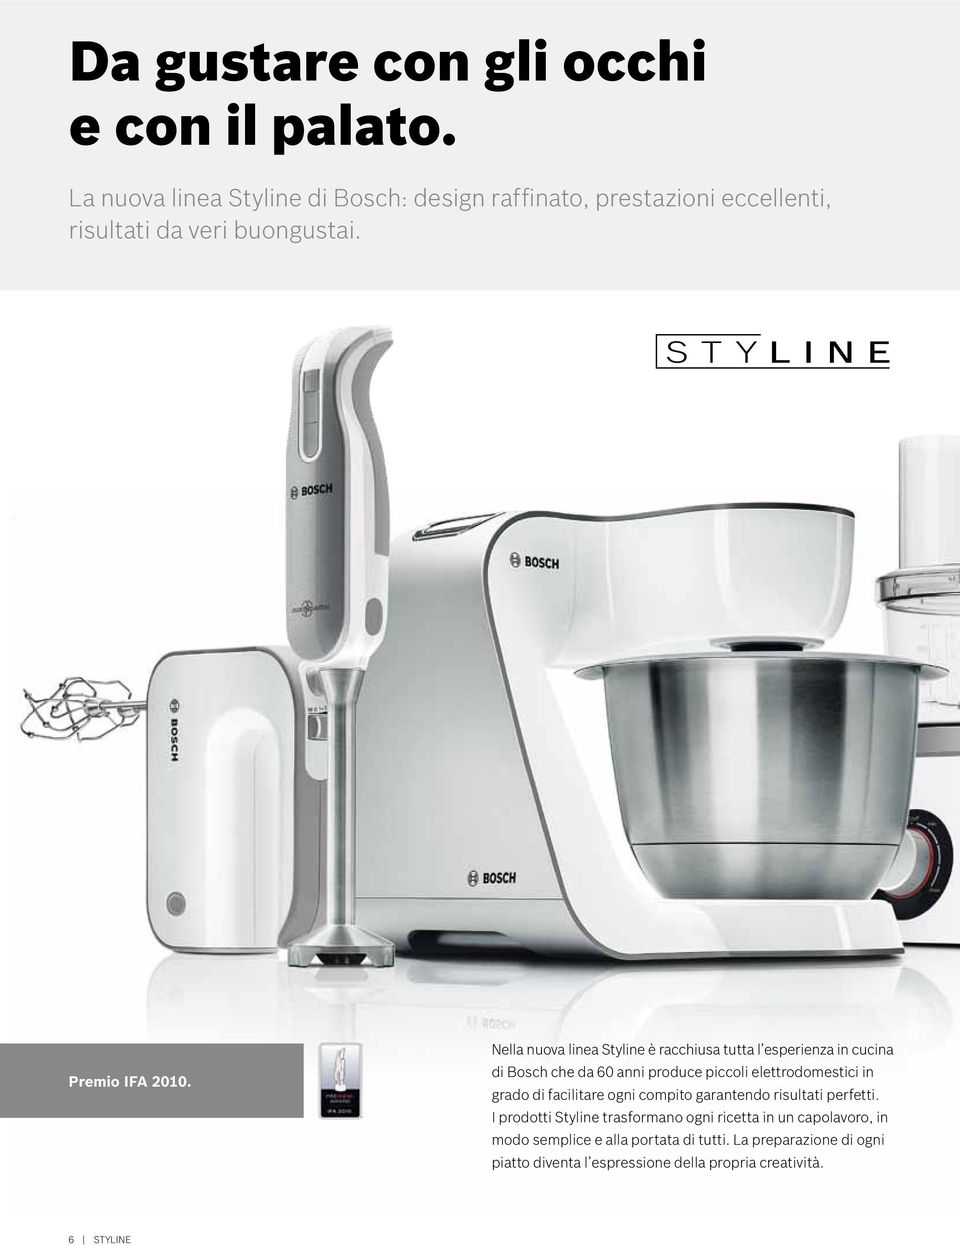 Nella nuova linea Styline è racchiusa tutta l esperienza in cucina di Bosch che da 60 anni produce piccoli elettrodomestici in grado di